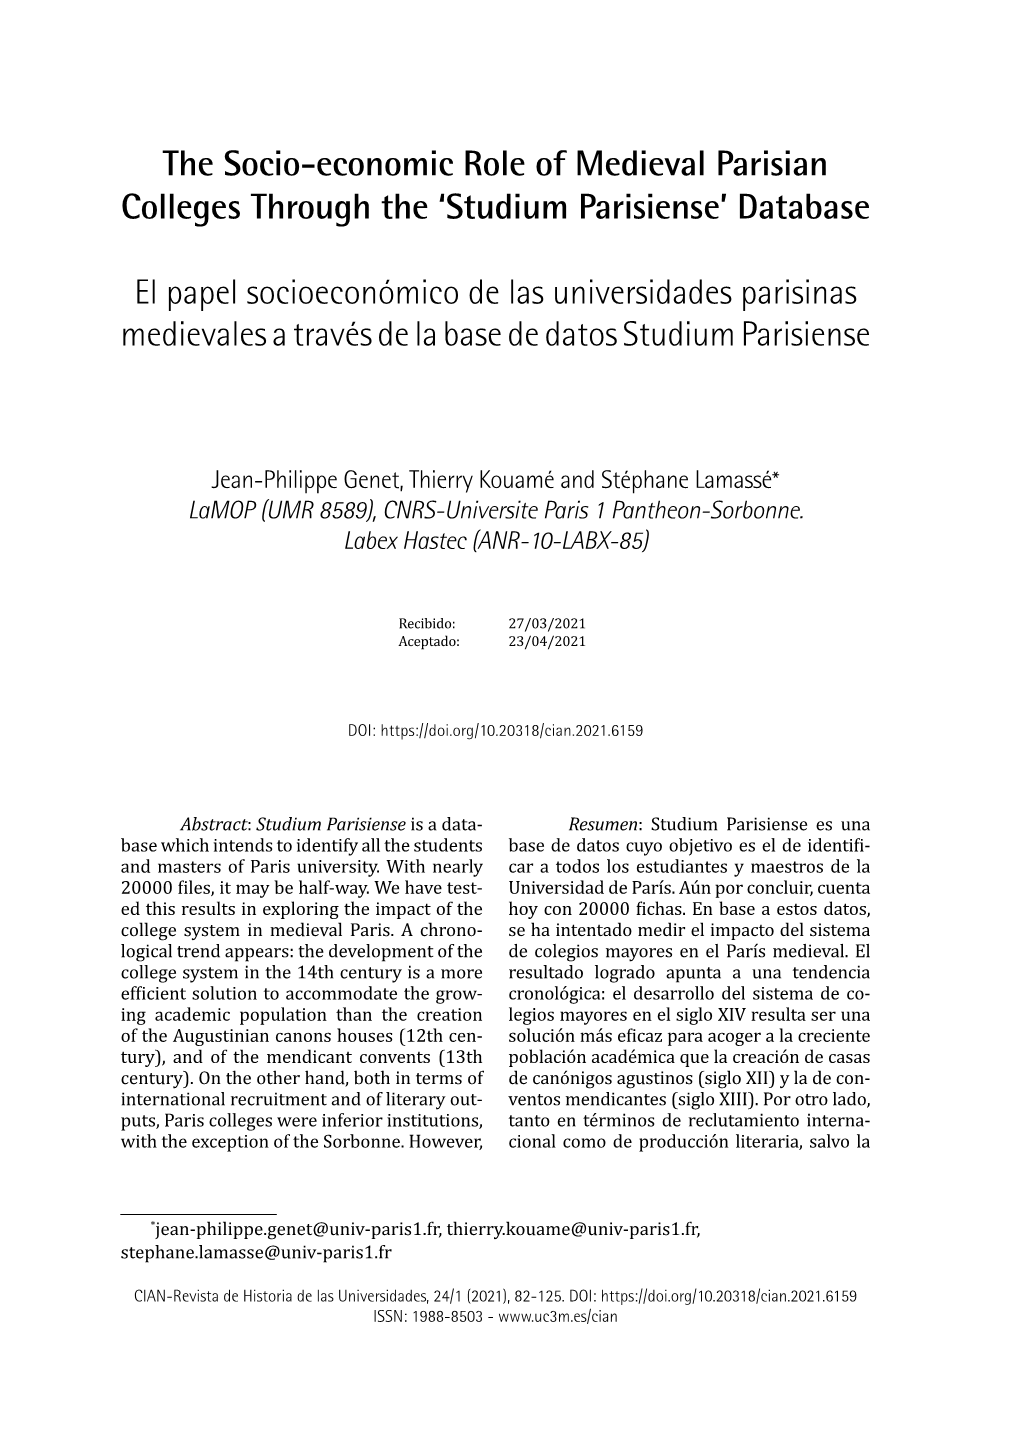 The Socio-Economic Role of Medieval Parisian Colleges Through the ‘Studium Parisiense’ Database